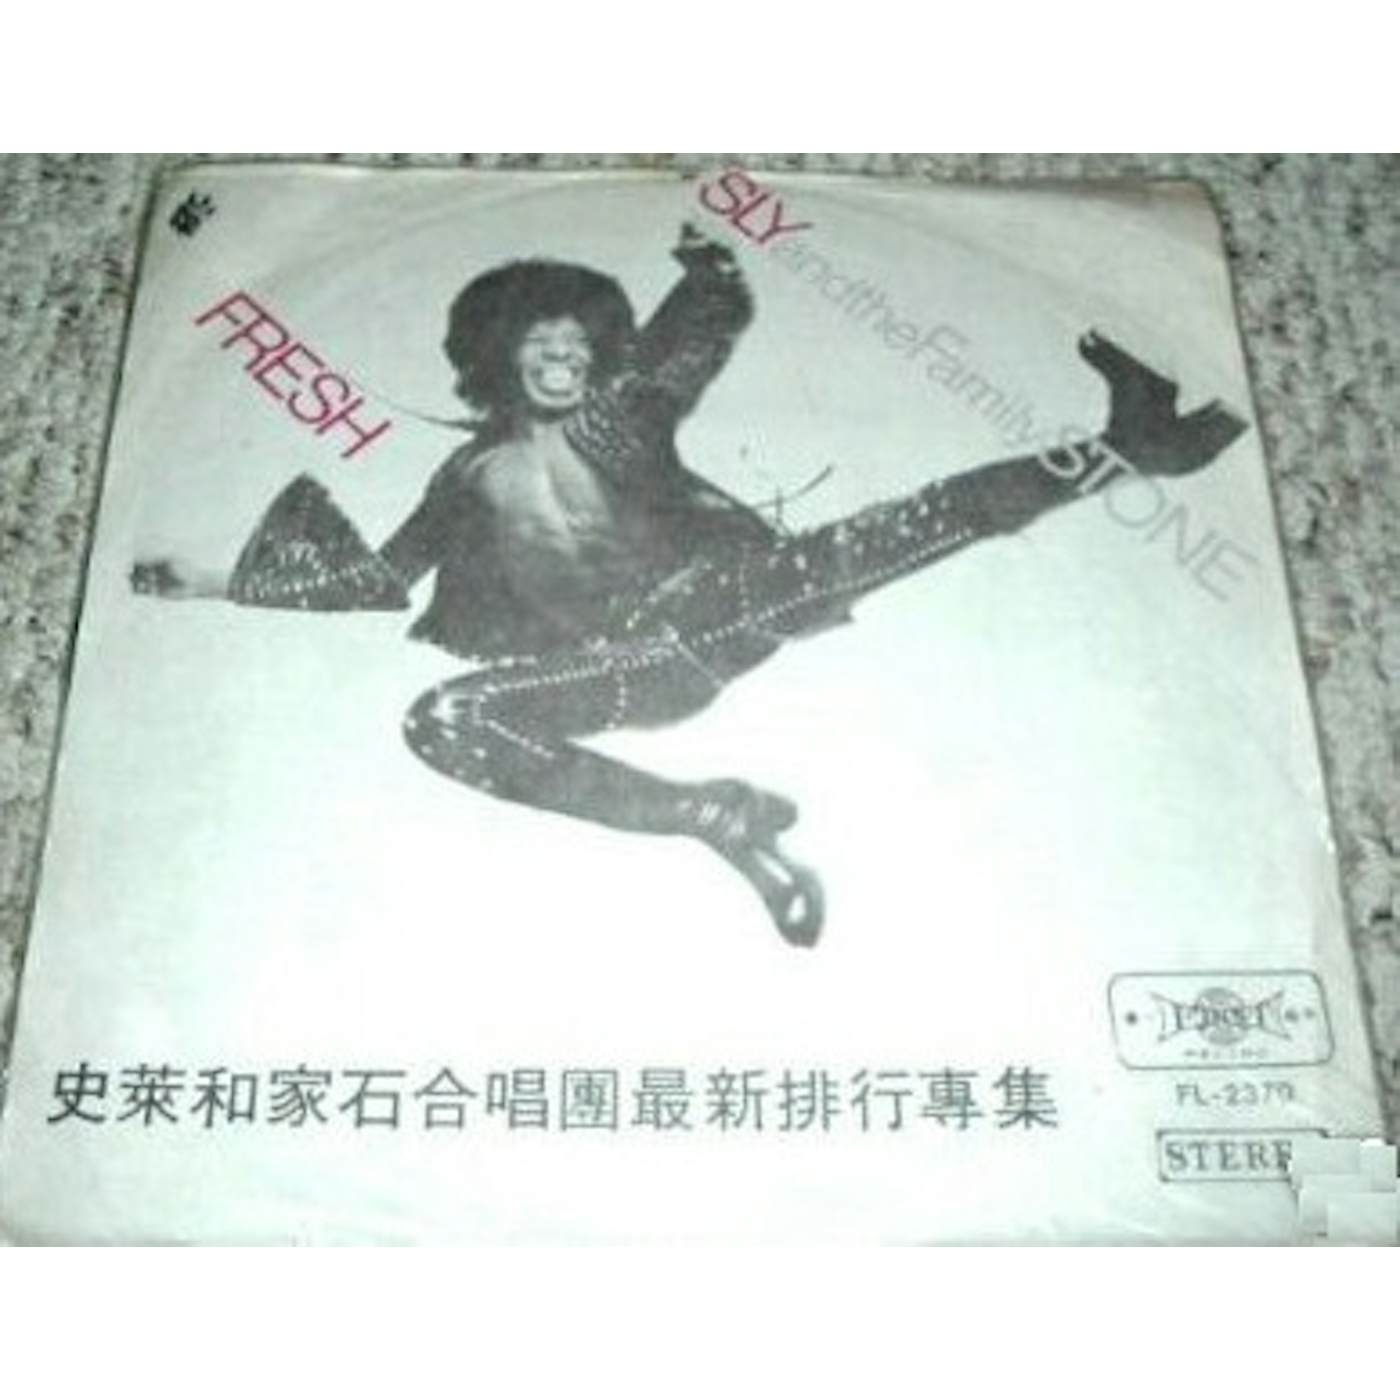 Sly & The Family Stone Fresh Vinyl Record